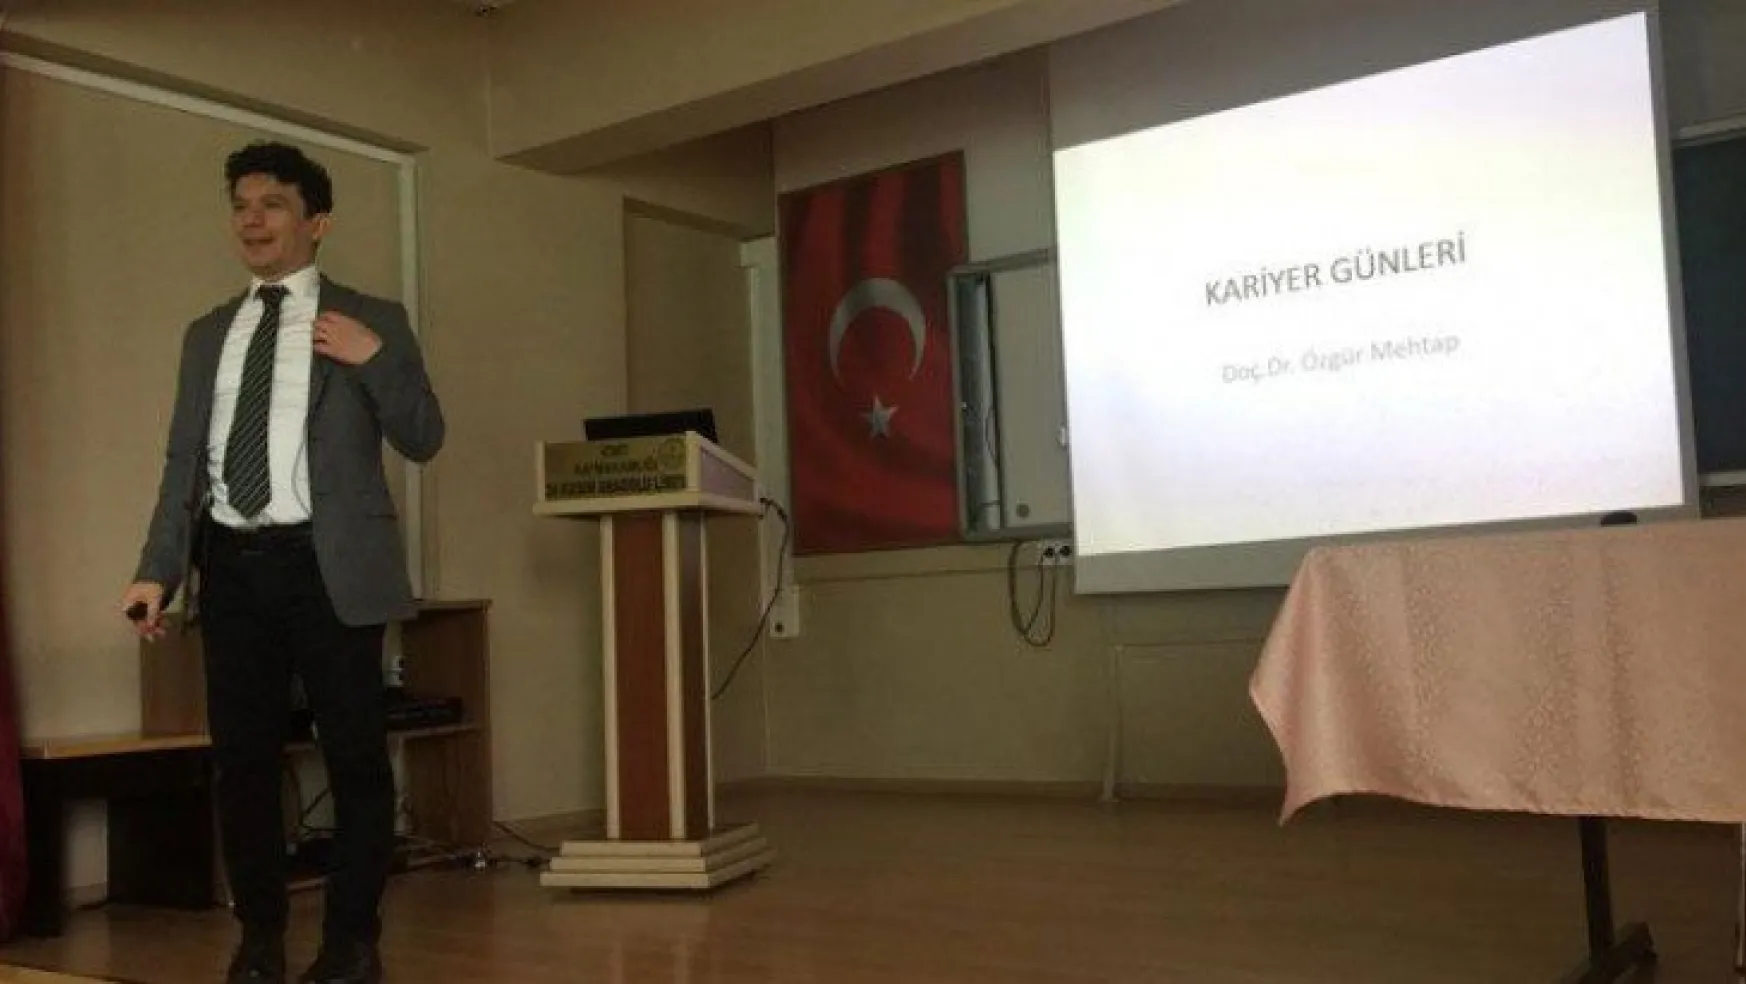 Doç. Dr. Özgür Mehtap, 24 Kasım Anadolu Lisesi öğrencileriyle buluştu